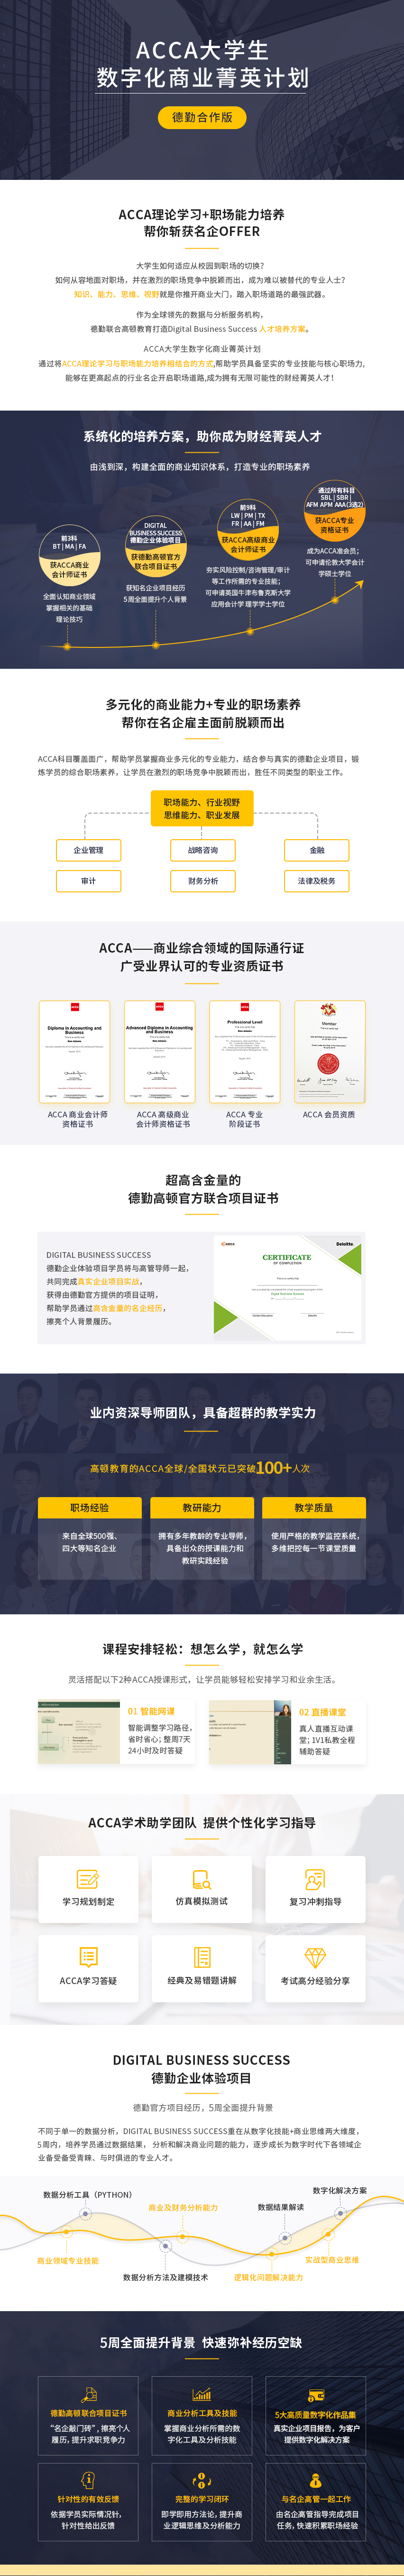 https://simg01.gaodunwangxiao.com/uploadfiles/product-center/202209/07/39516_20220907103914.png